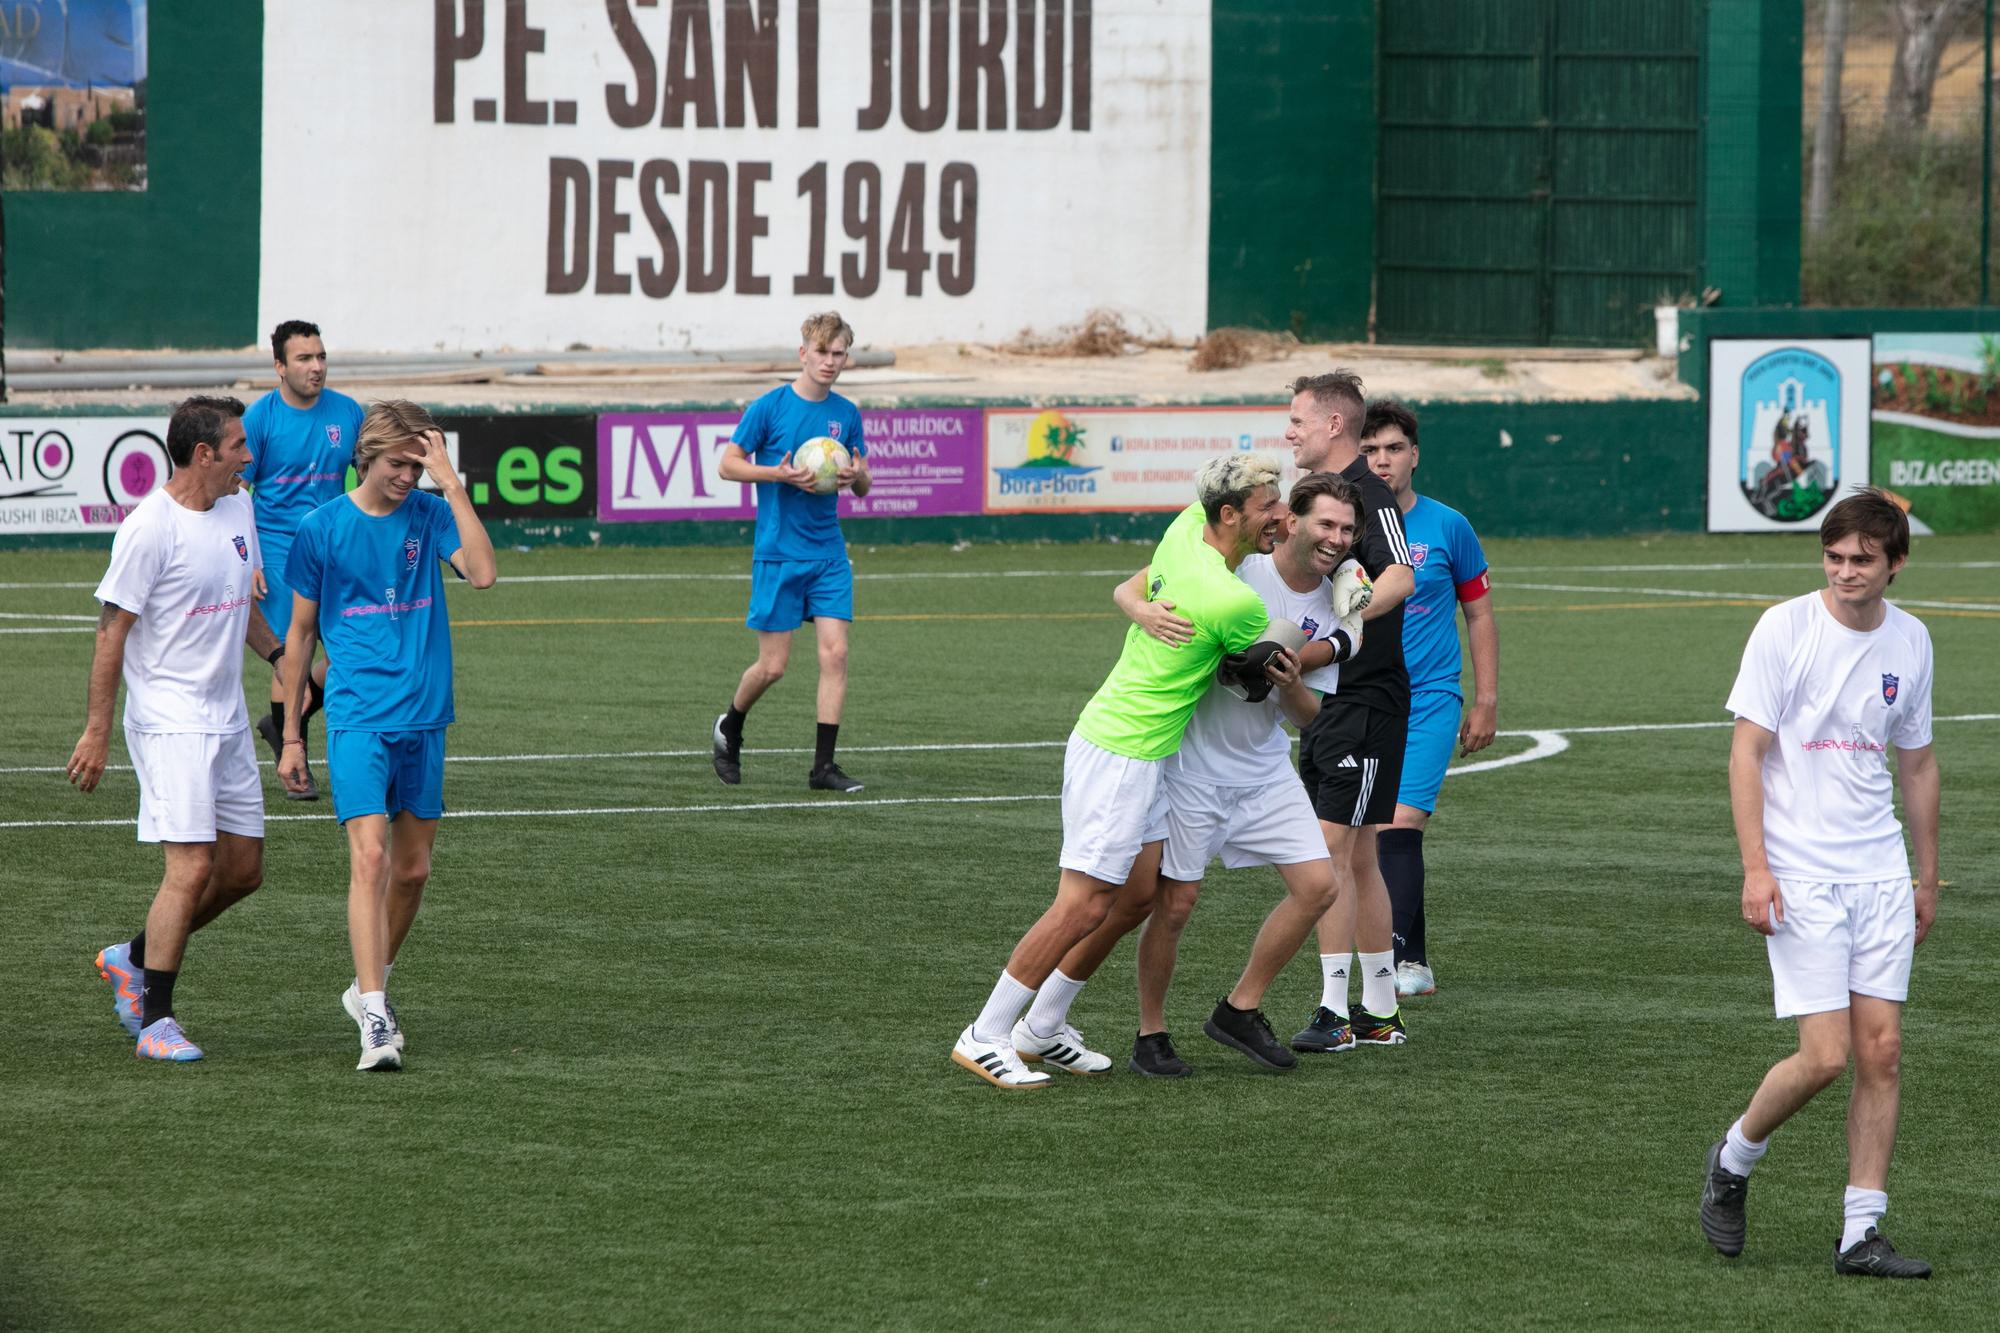 Galería de imágenes de la jornada de fútbol solidario organizada por el Morna International College